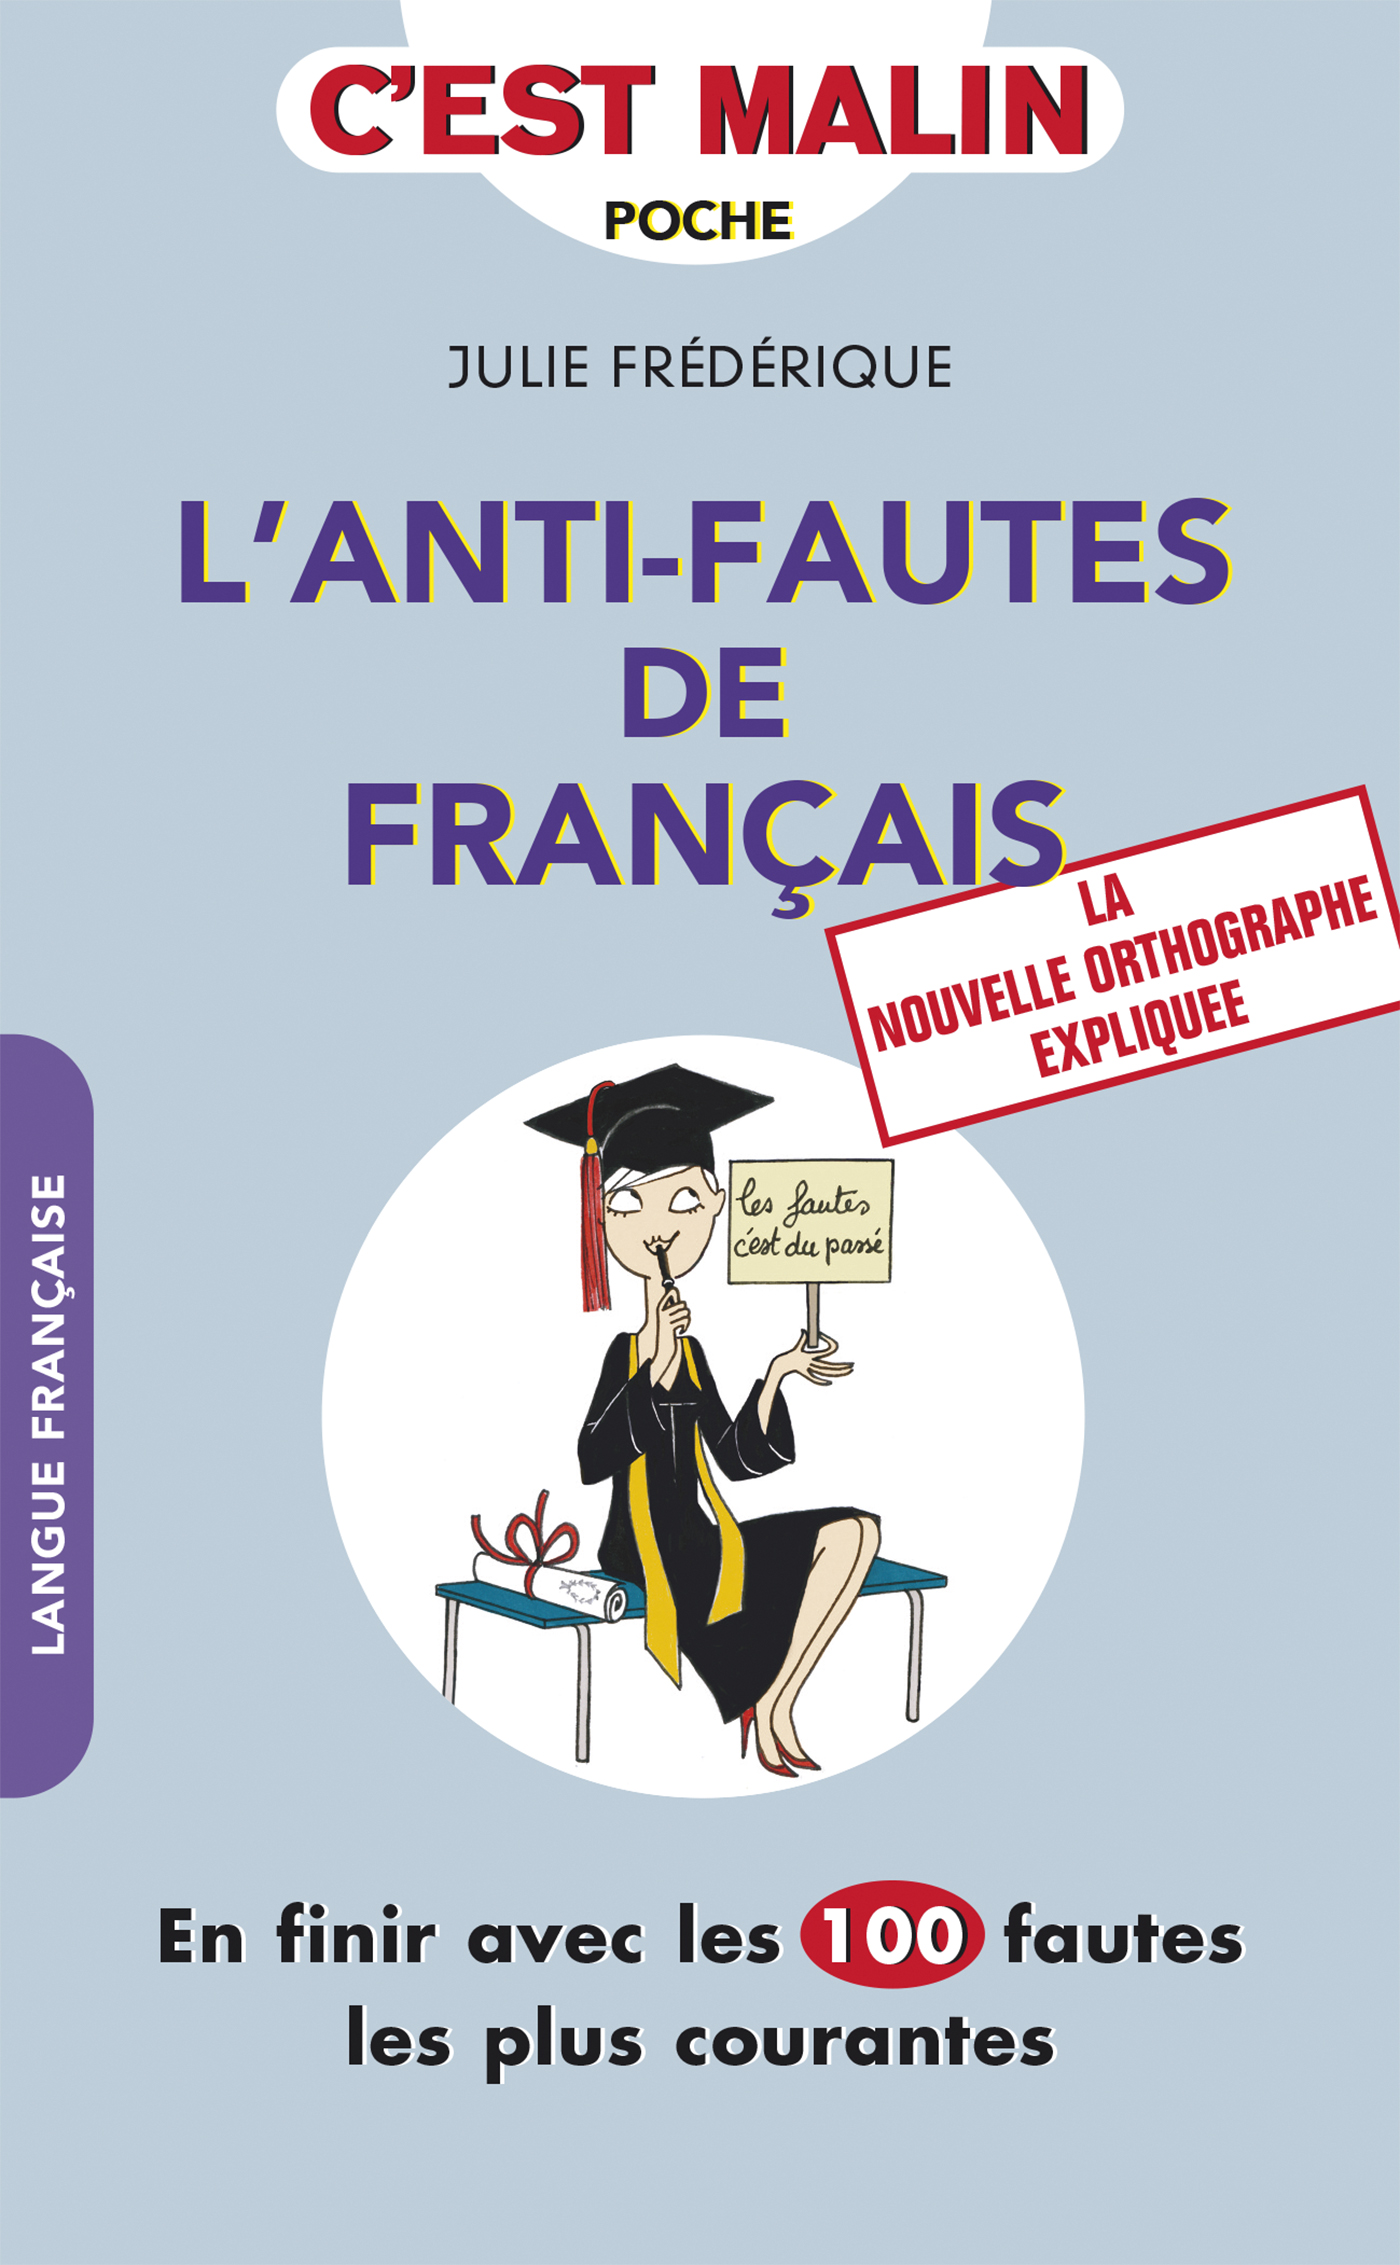 Fautes. A Plus 2 en Francais pdf.